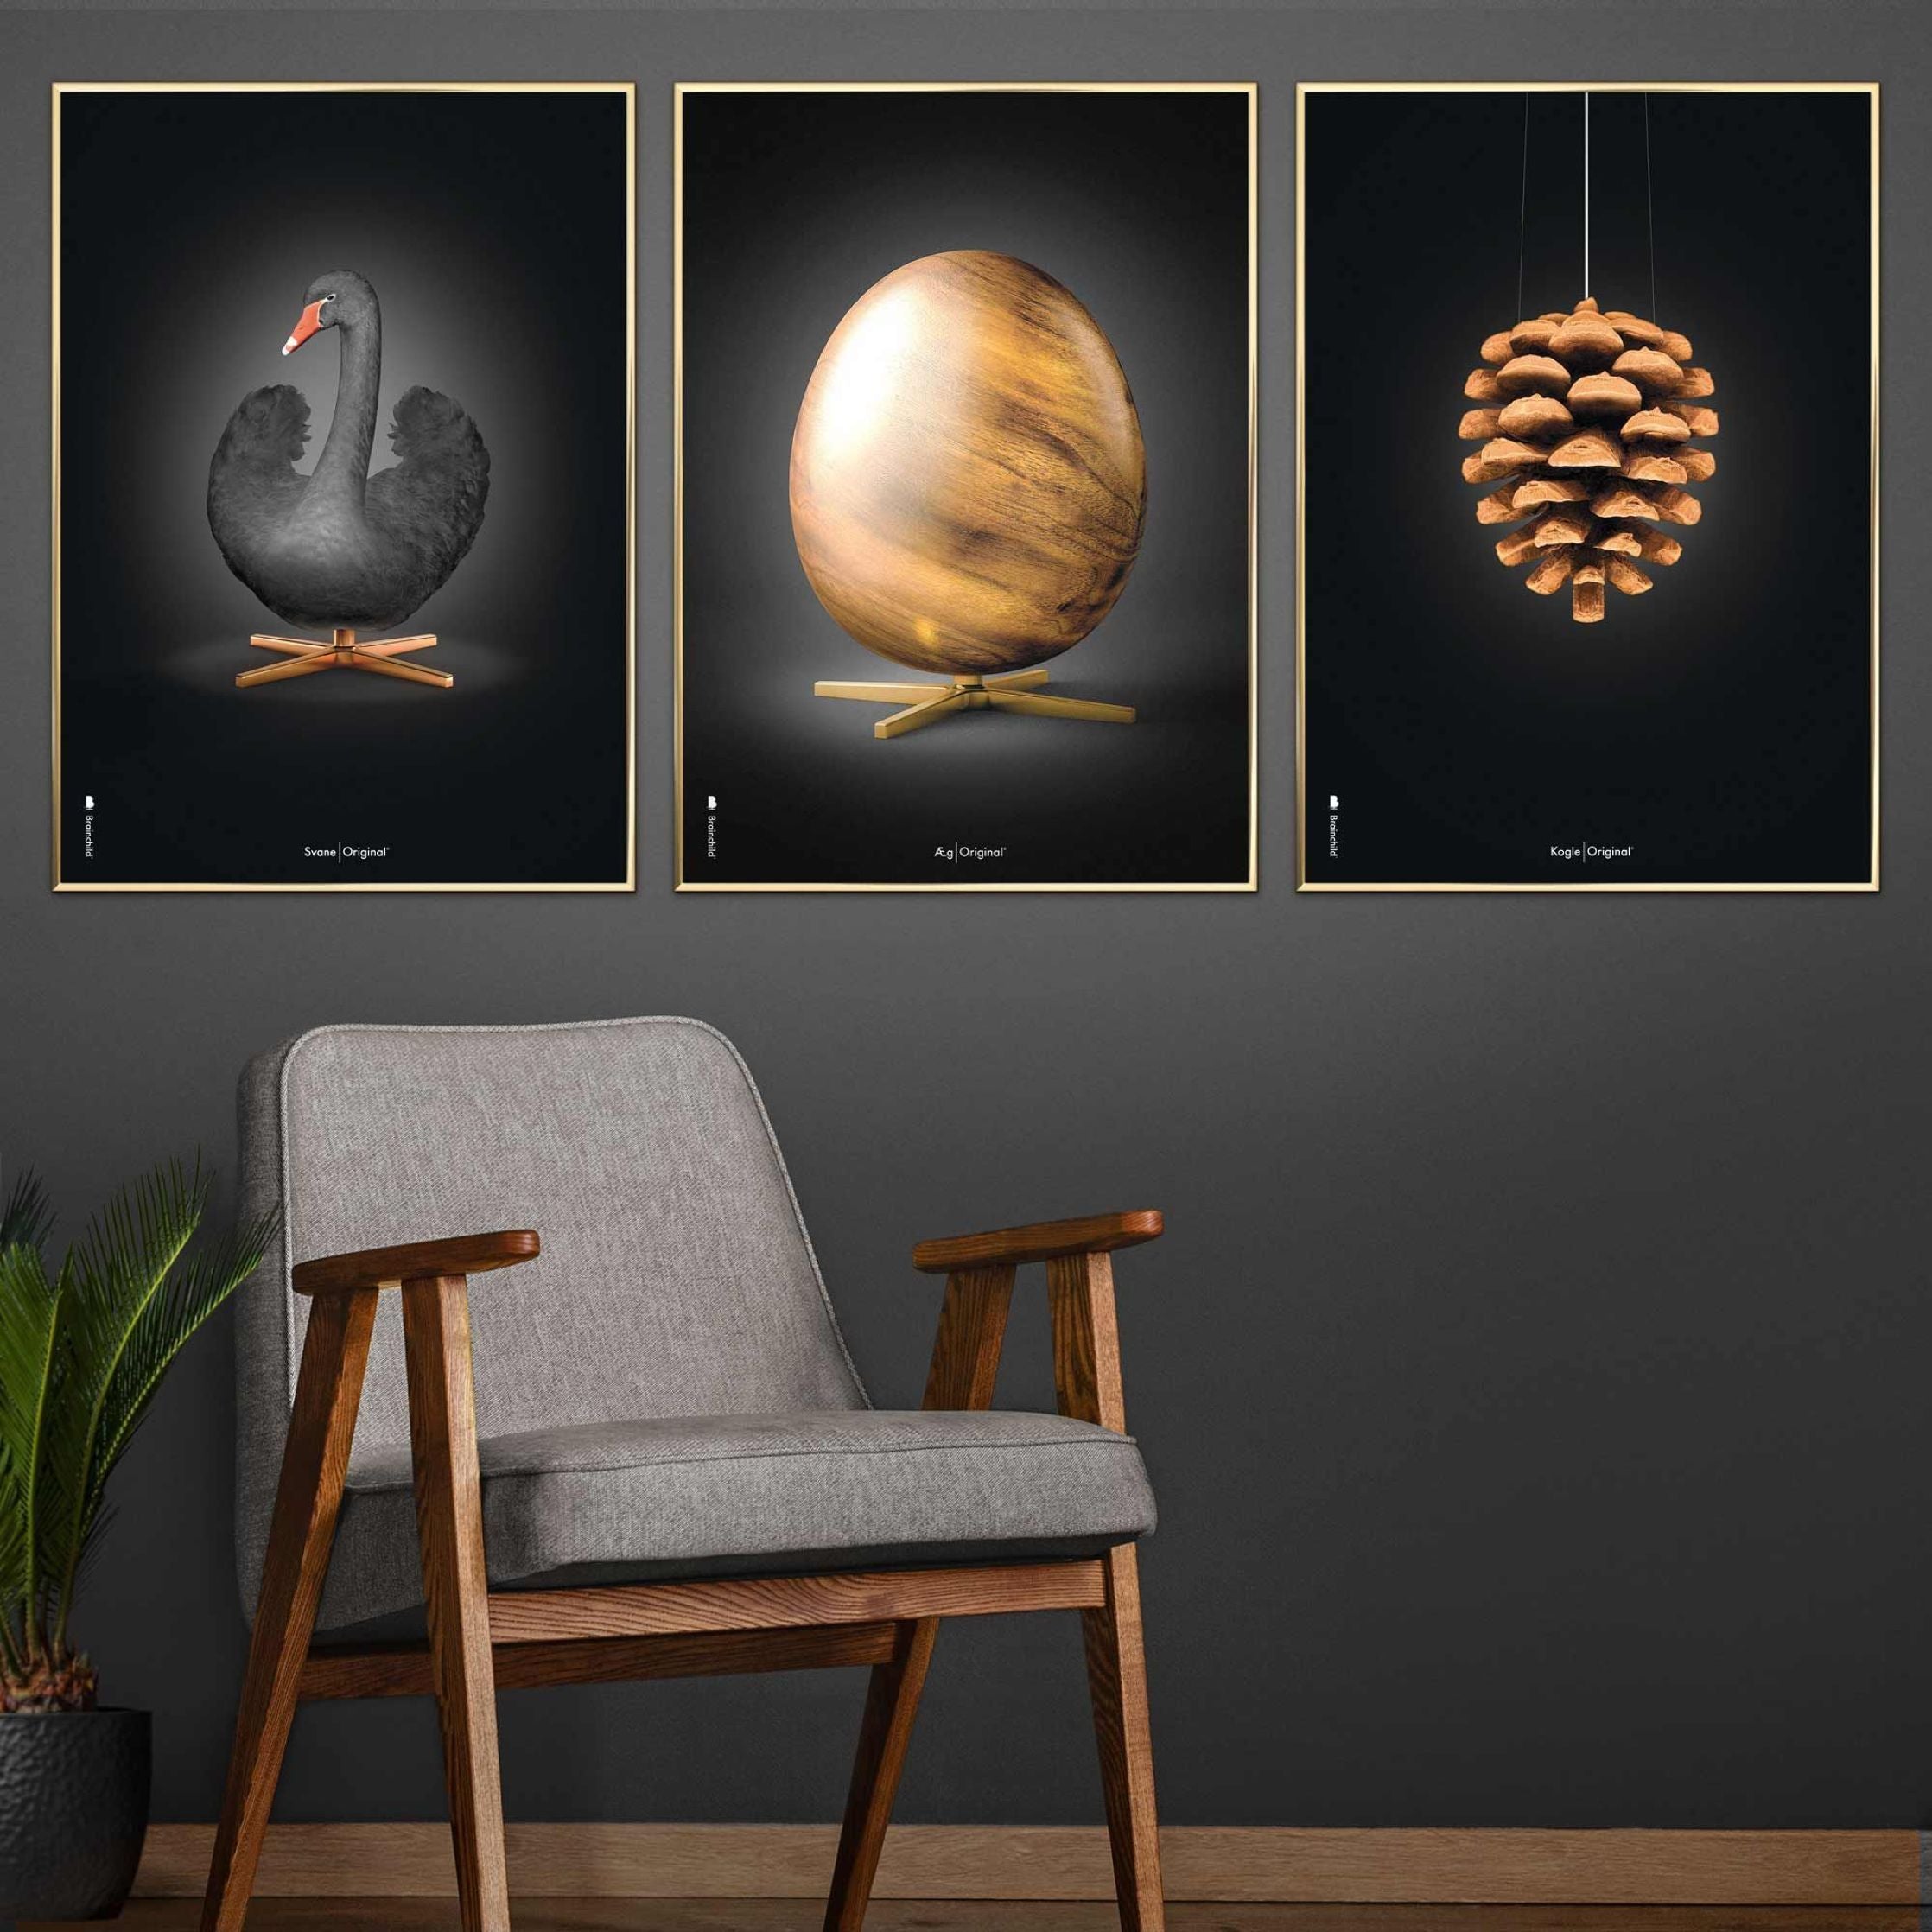 Poster di figure di uova di prima cosa, cornice in legno scuro A5, nero